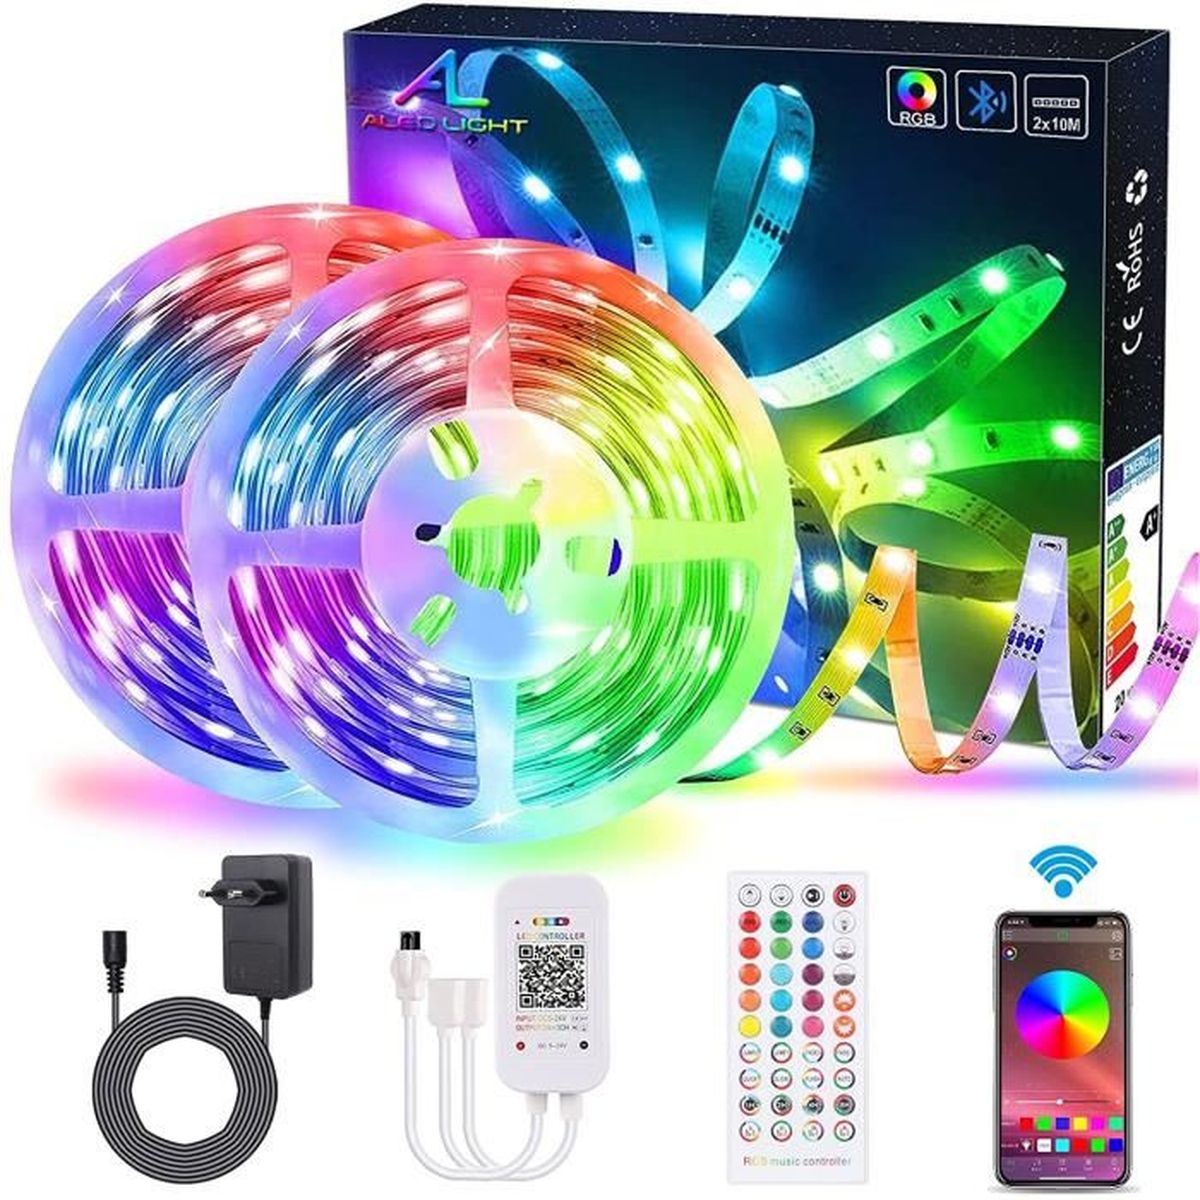 Bluetooth Bande LED RGB Multicolore avec Télécommande Synchroniser avec la Musique Contrôlé par APP du Smartphone Bande LED Lumineuse Dimmable pour Maison Chambre Bewahly Ruban LED 20m Cuisine